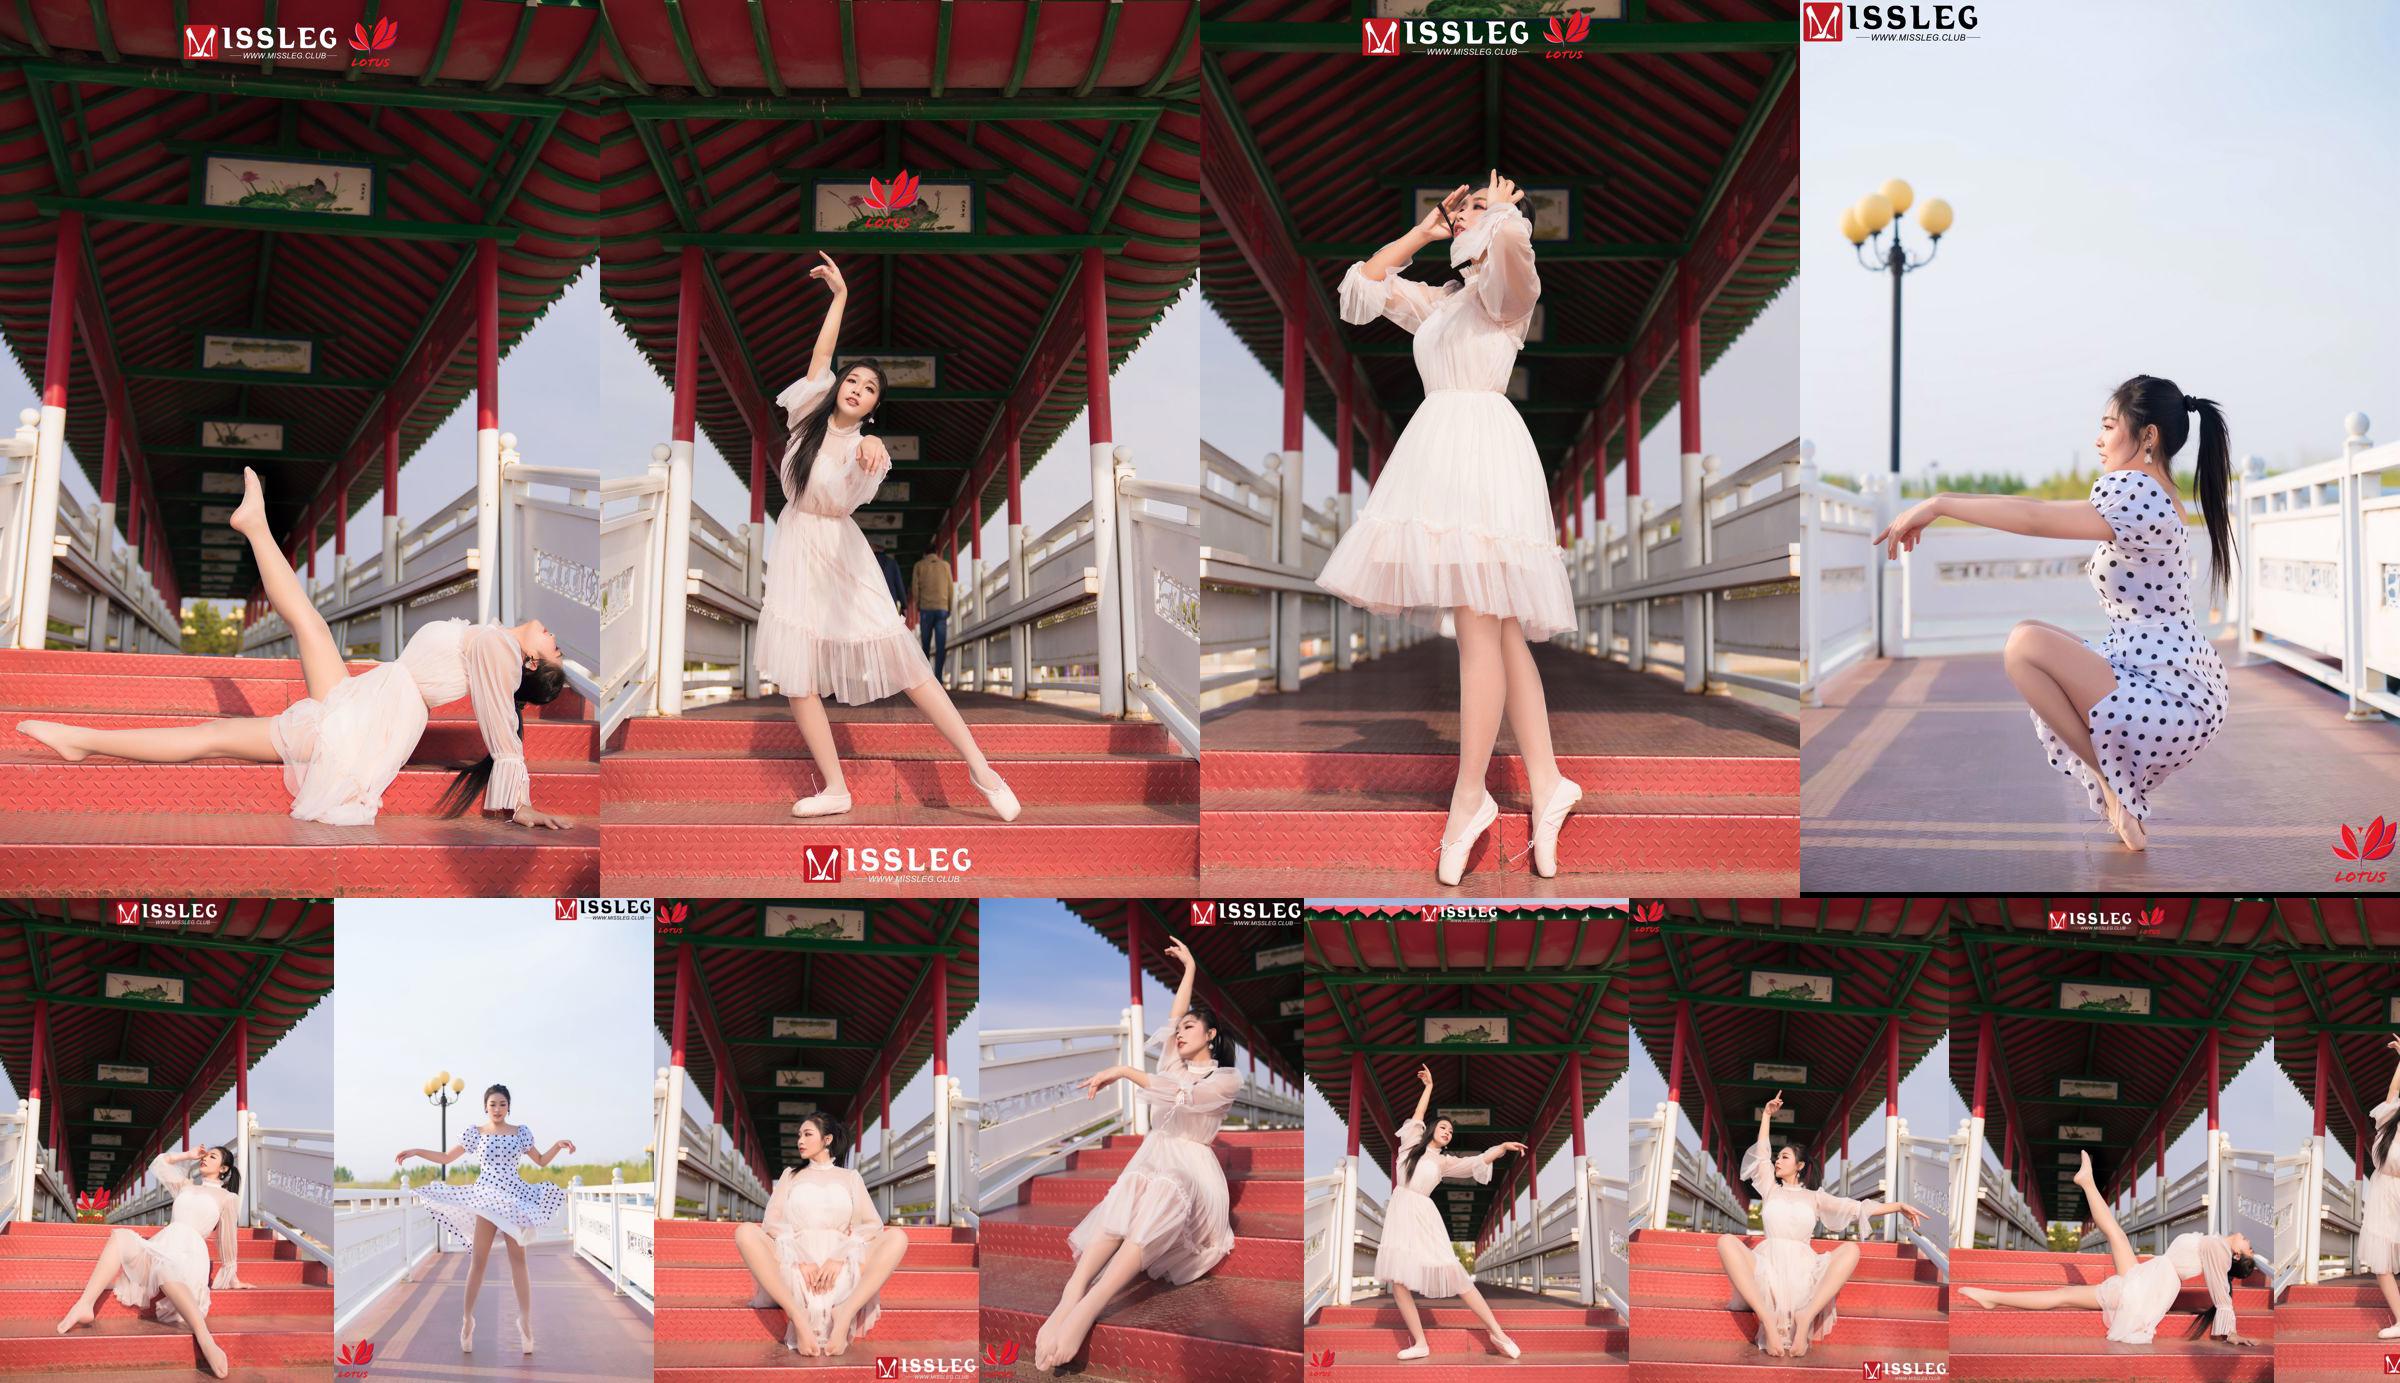 [蜜 丝 MISSLEG] M018 Imp 3 "Scenic Dancer" No.3cce06 Page 27